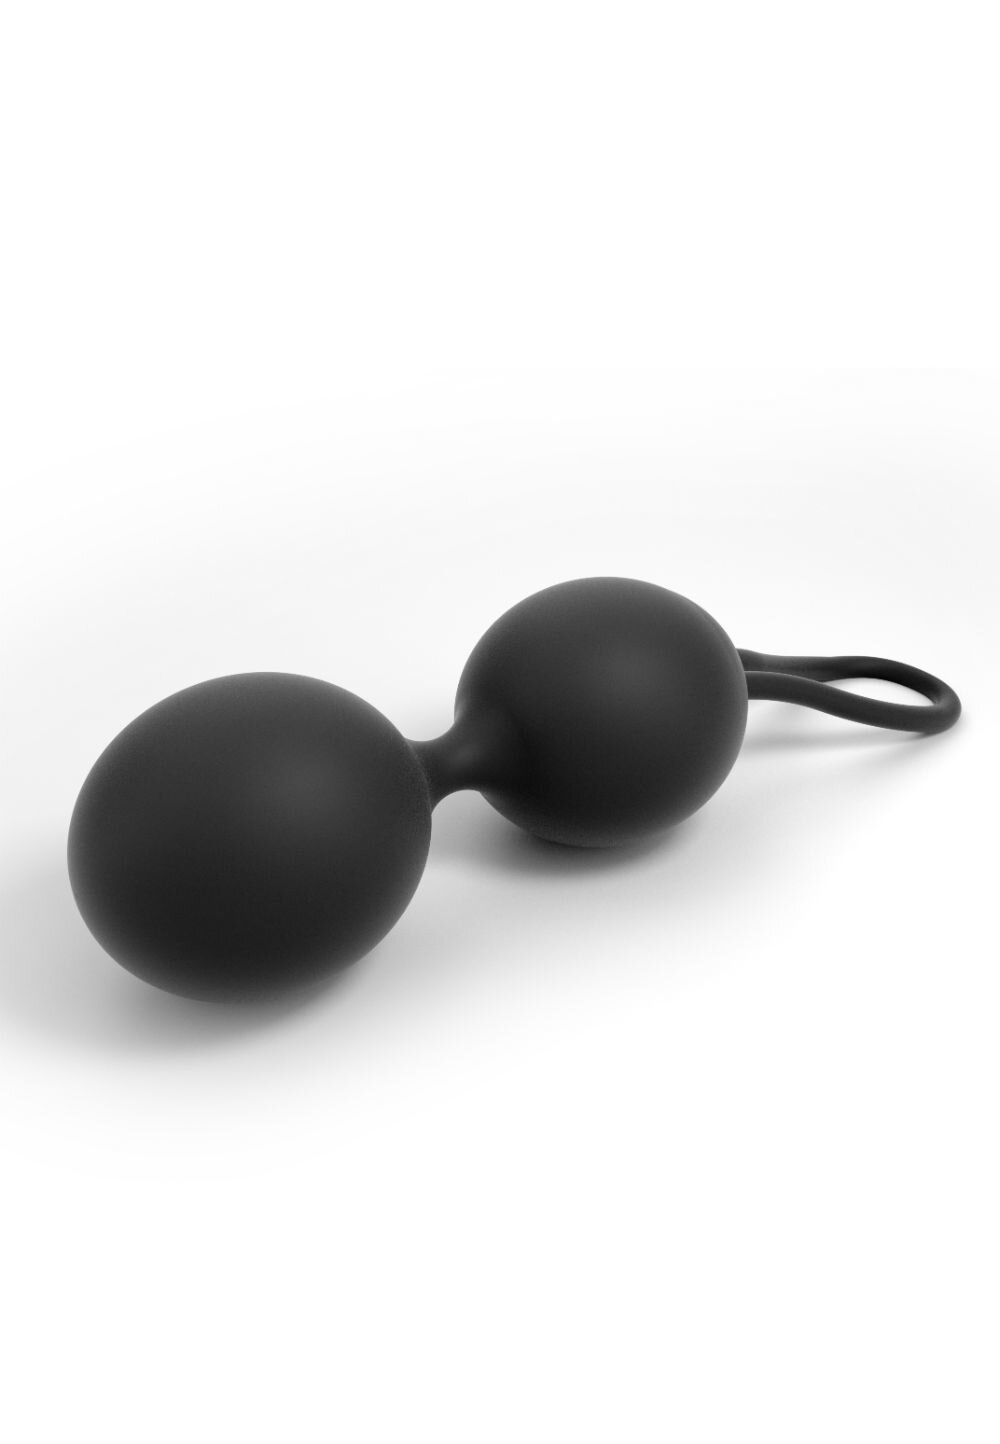 Вагинальные шарики Dorcel Dual Balls Black, диаметр 3,6см, вес 55гр фото